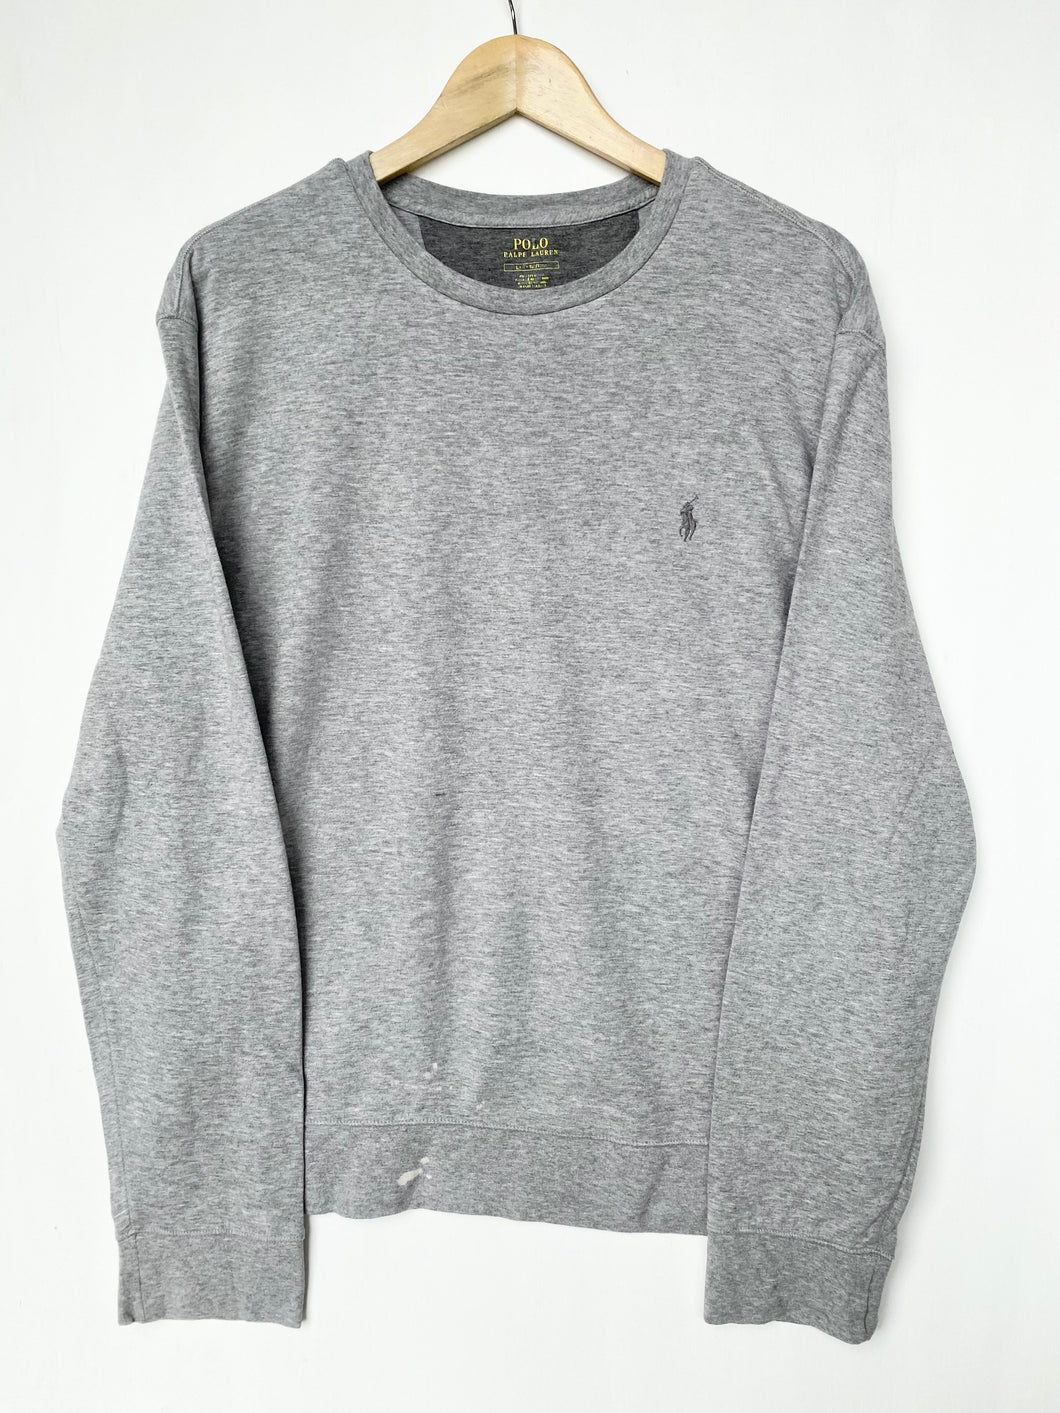 Ralph Lauren sweatshirt (L)